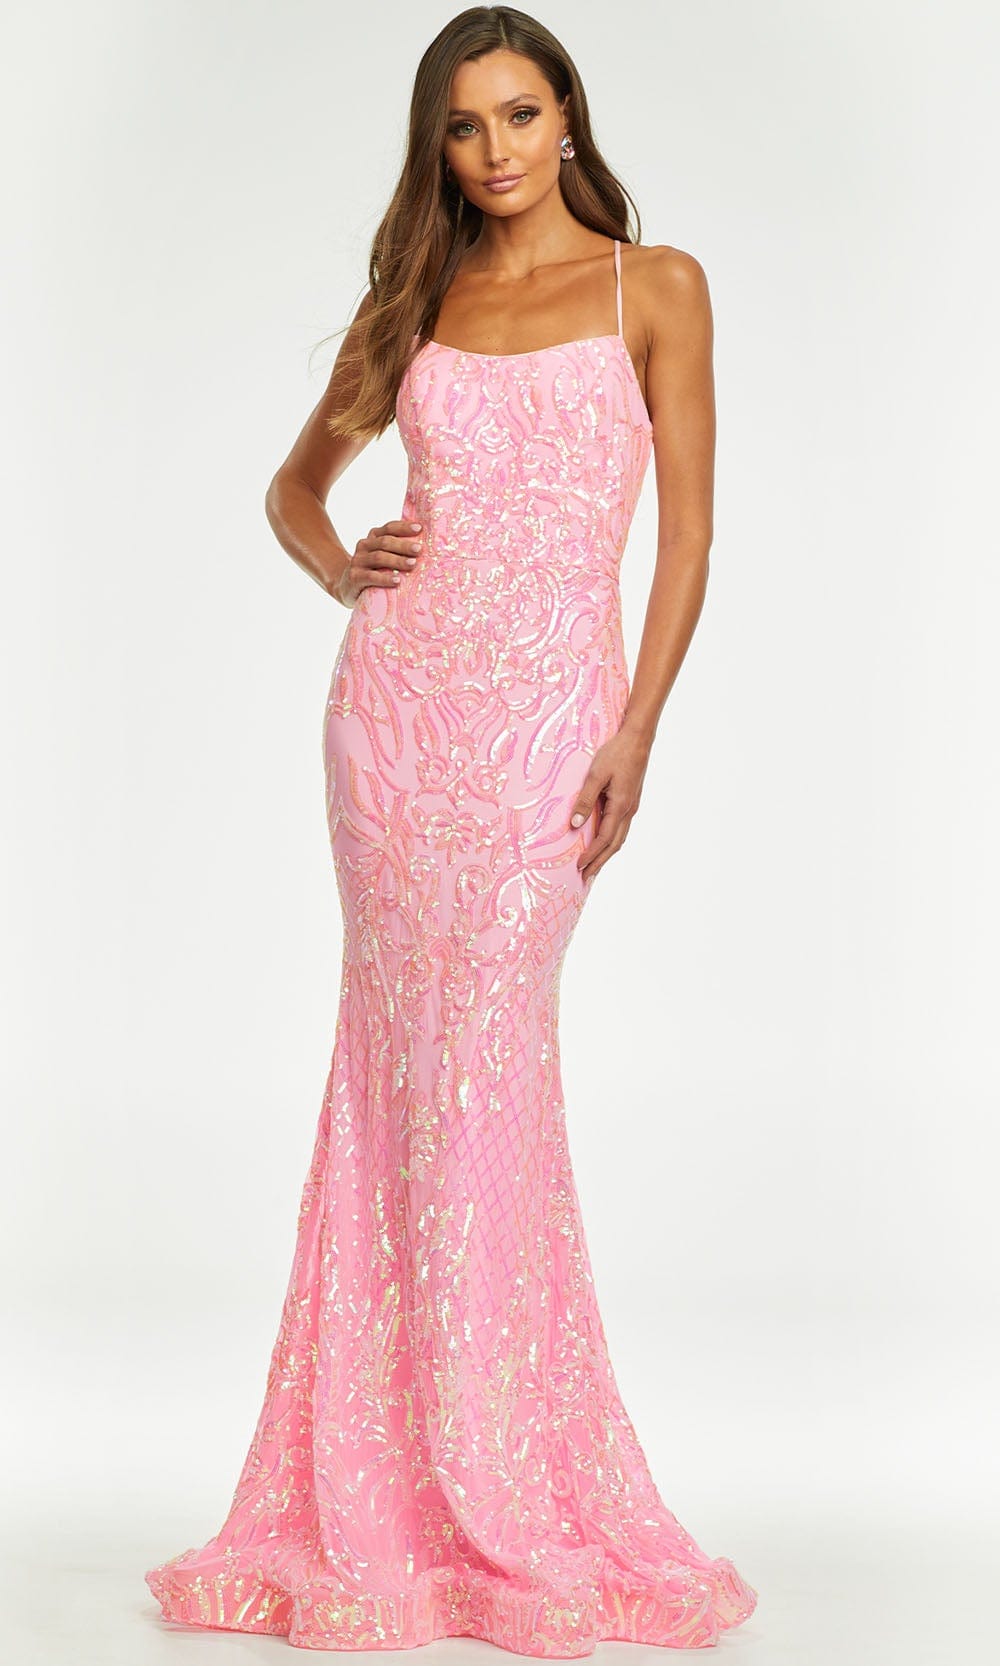 Ashley Lauren - 11114 Sequin Motif Scoop Gown Prom Dresses 0 / Baby Pink